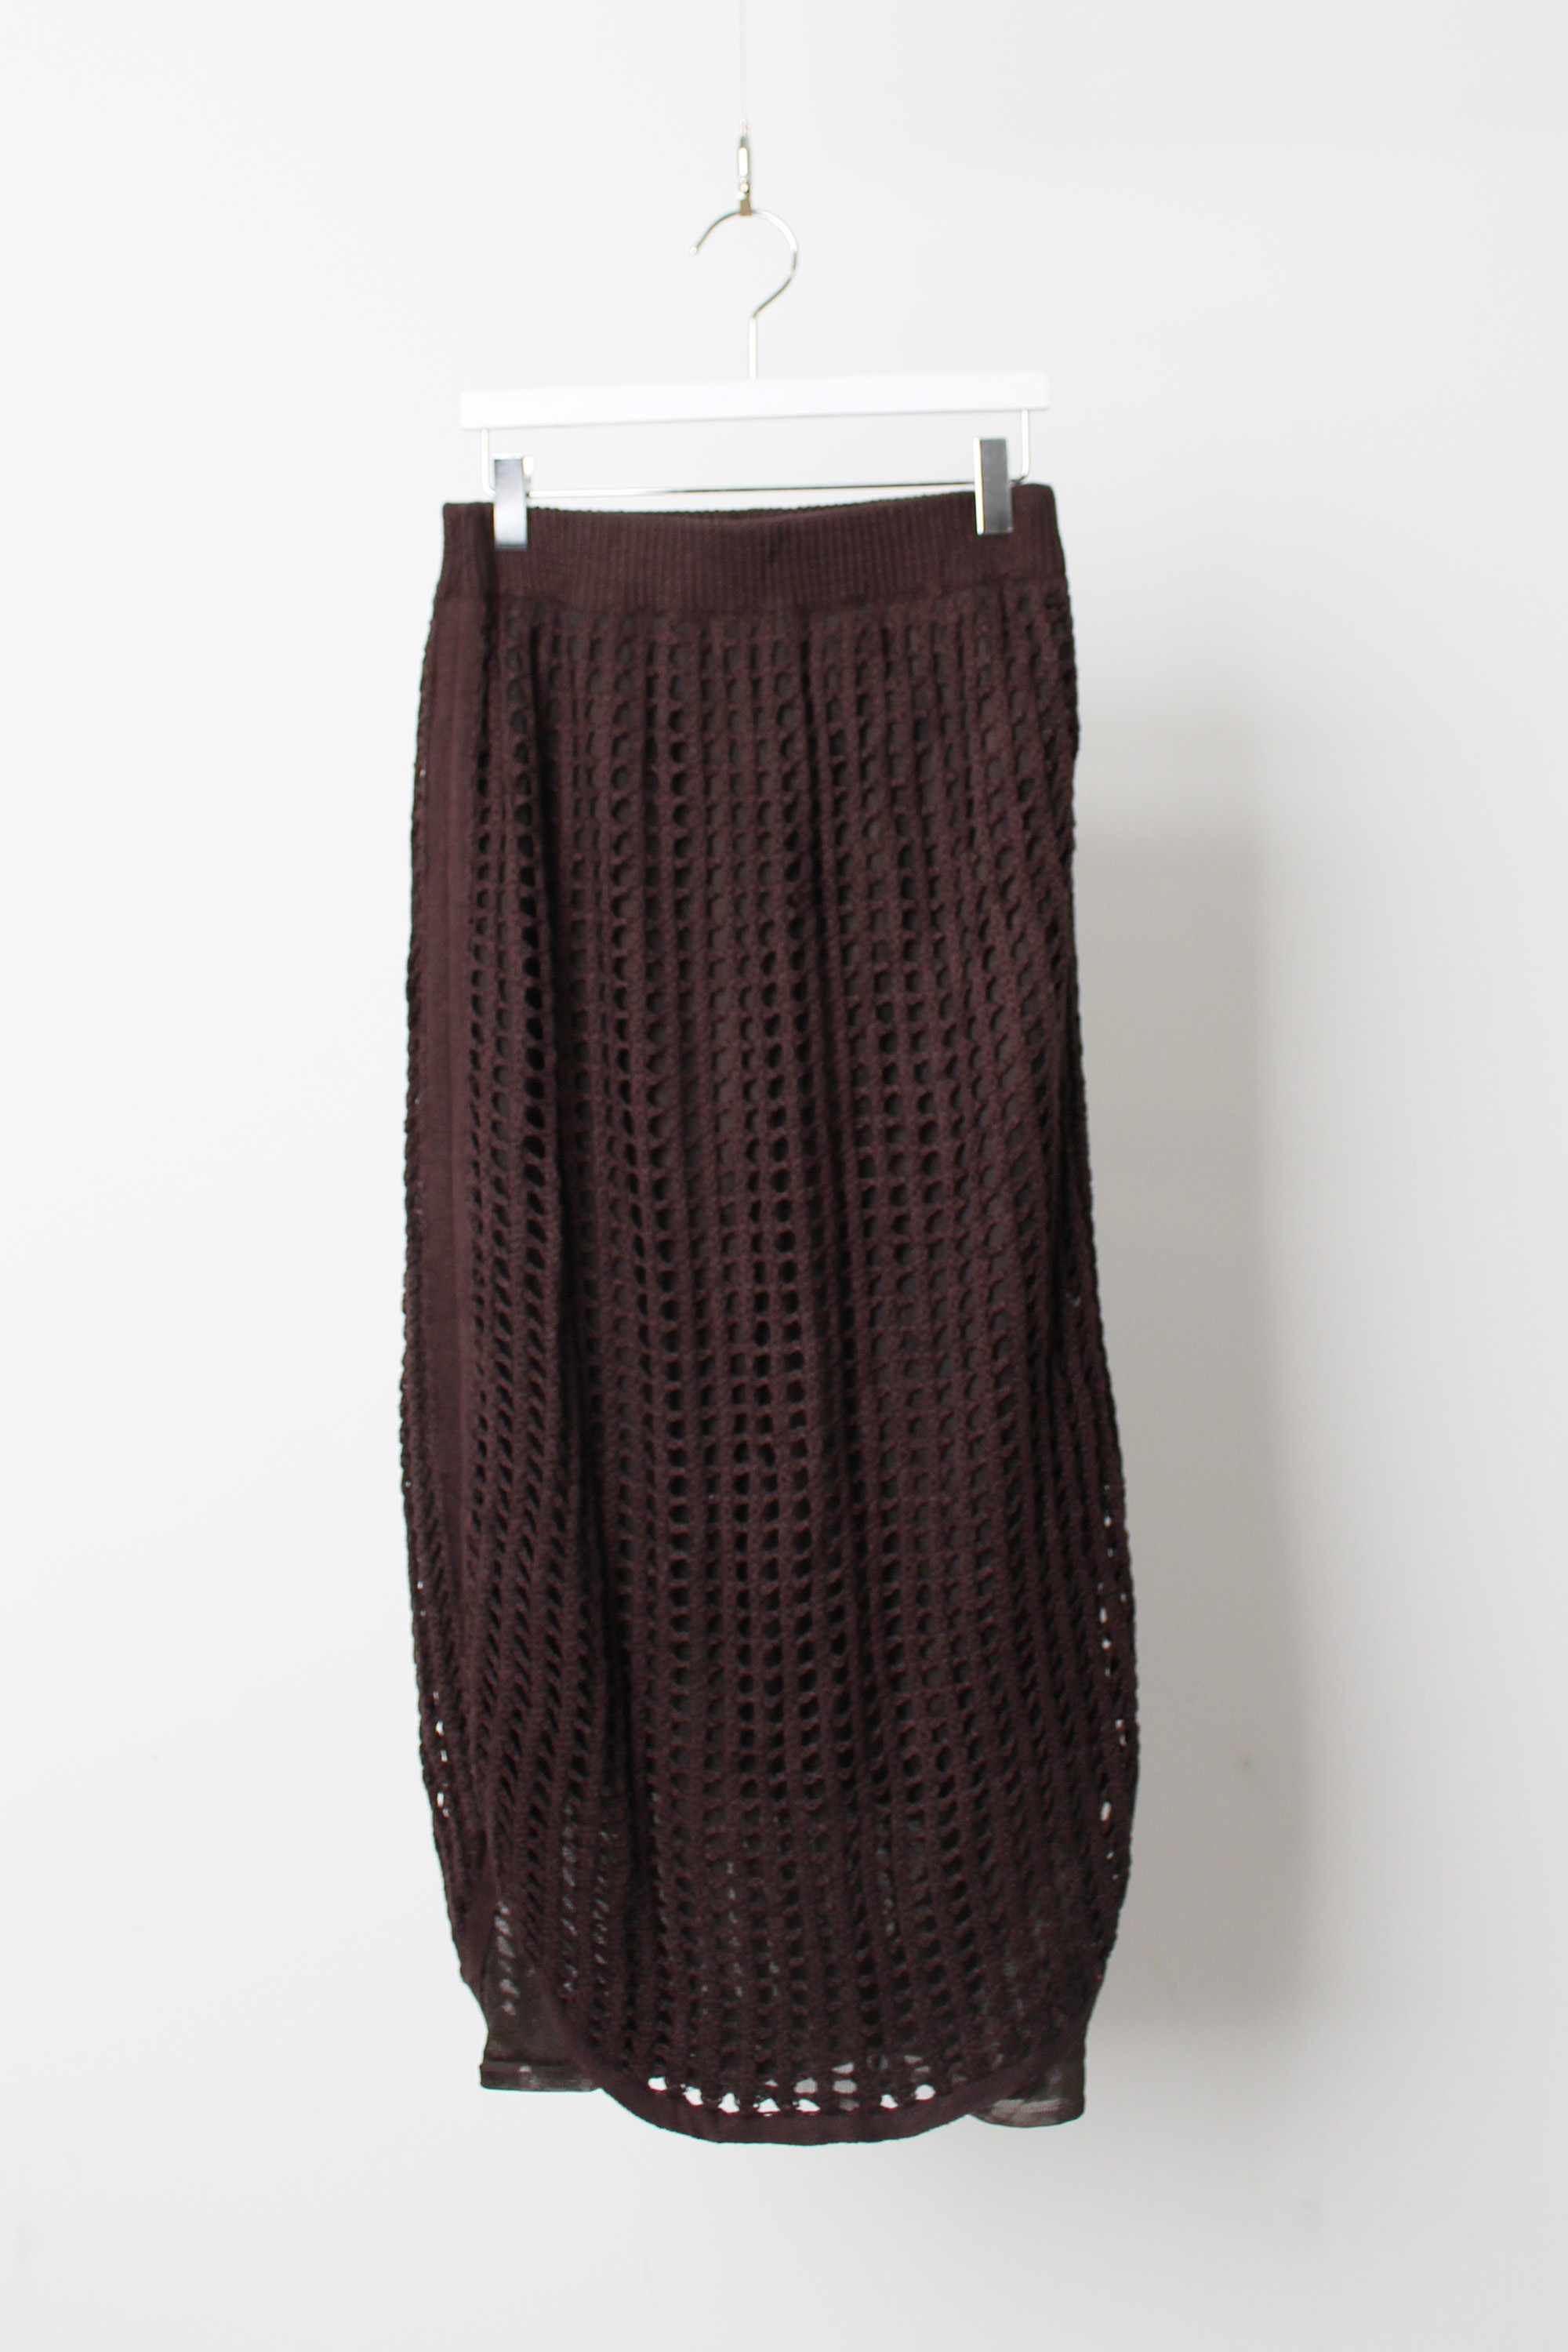 AMERI knit knitted skirt